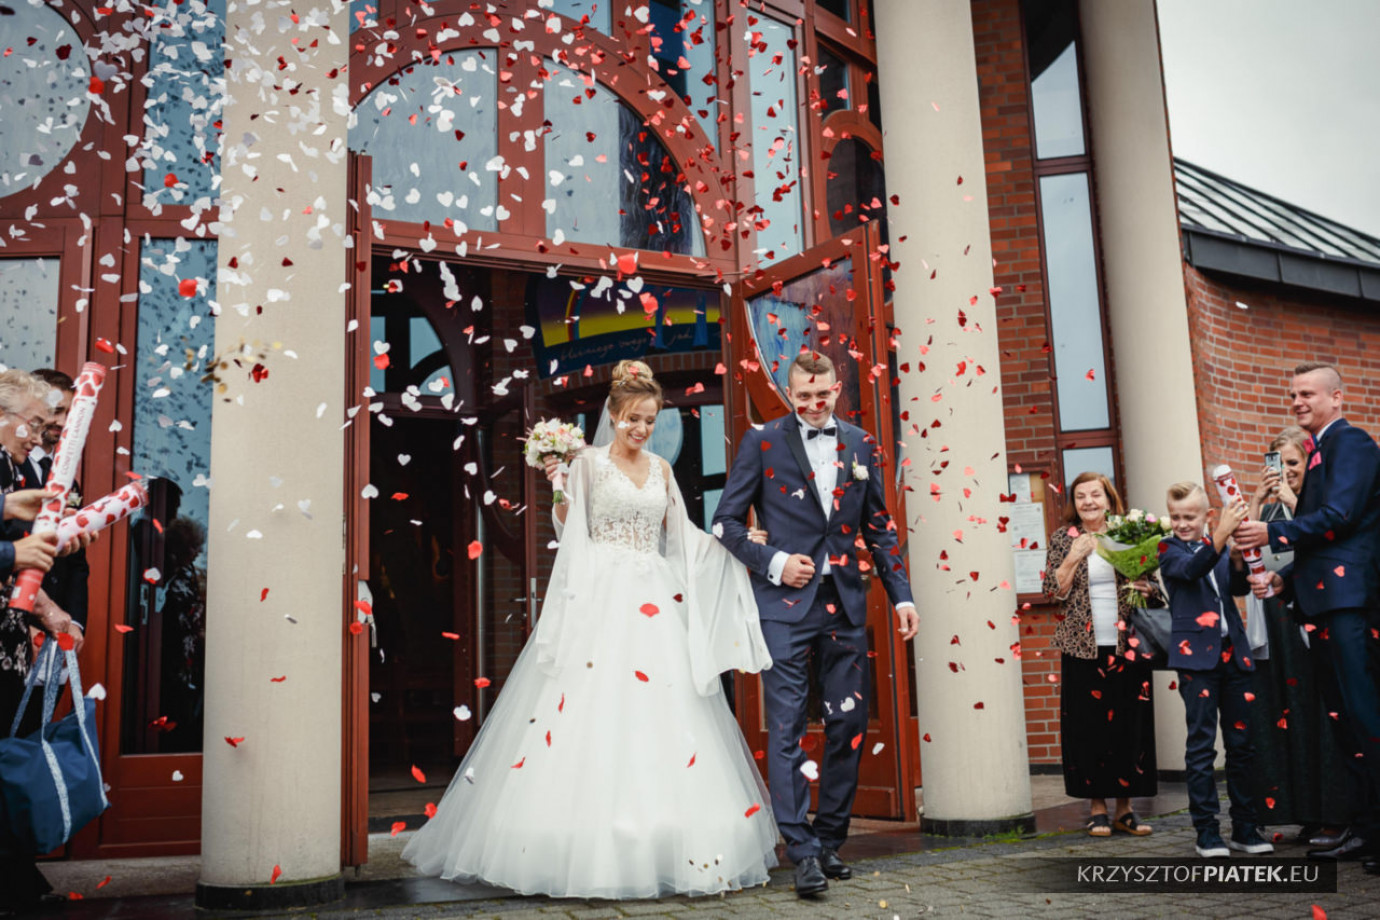 zdjęcia katowice fotograf krzysztof-piatek portfolio zdjecia slubne inspiracje wesele plener slubny sesja slubna